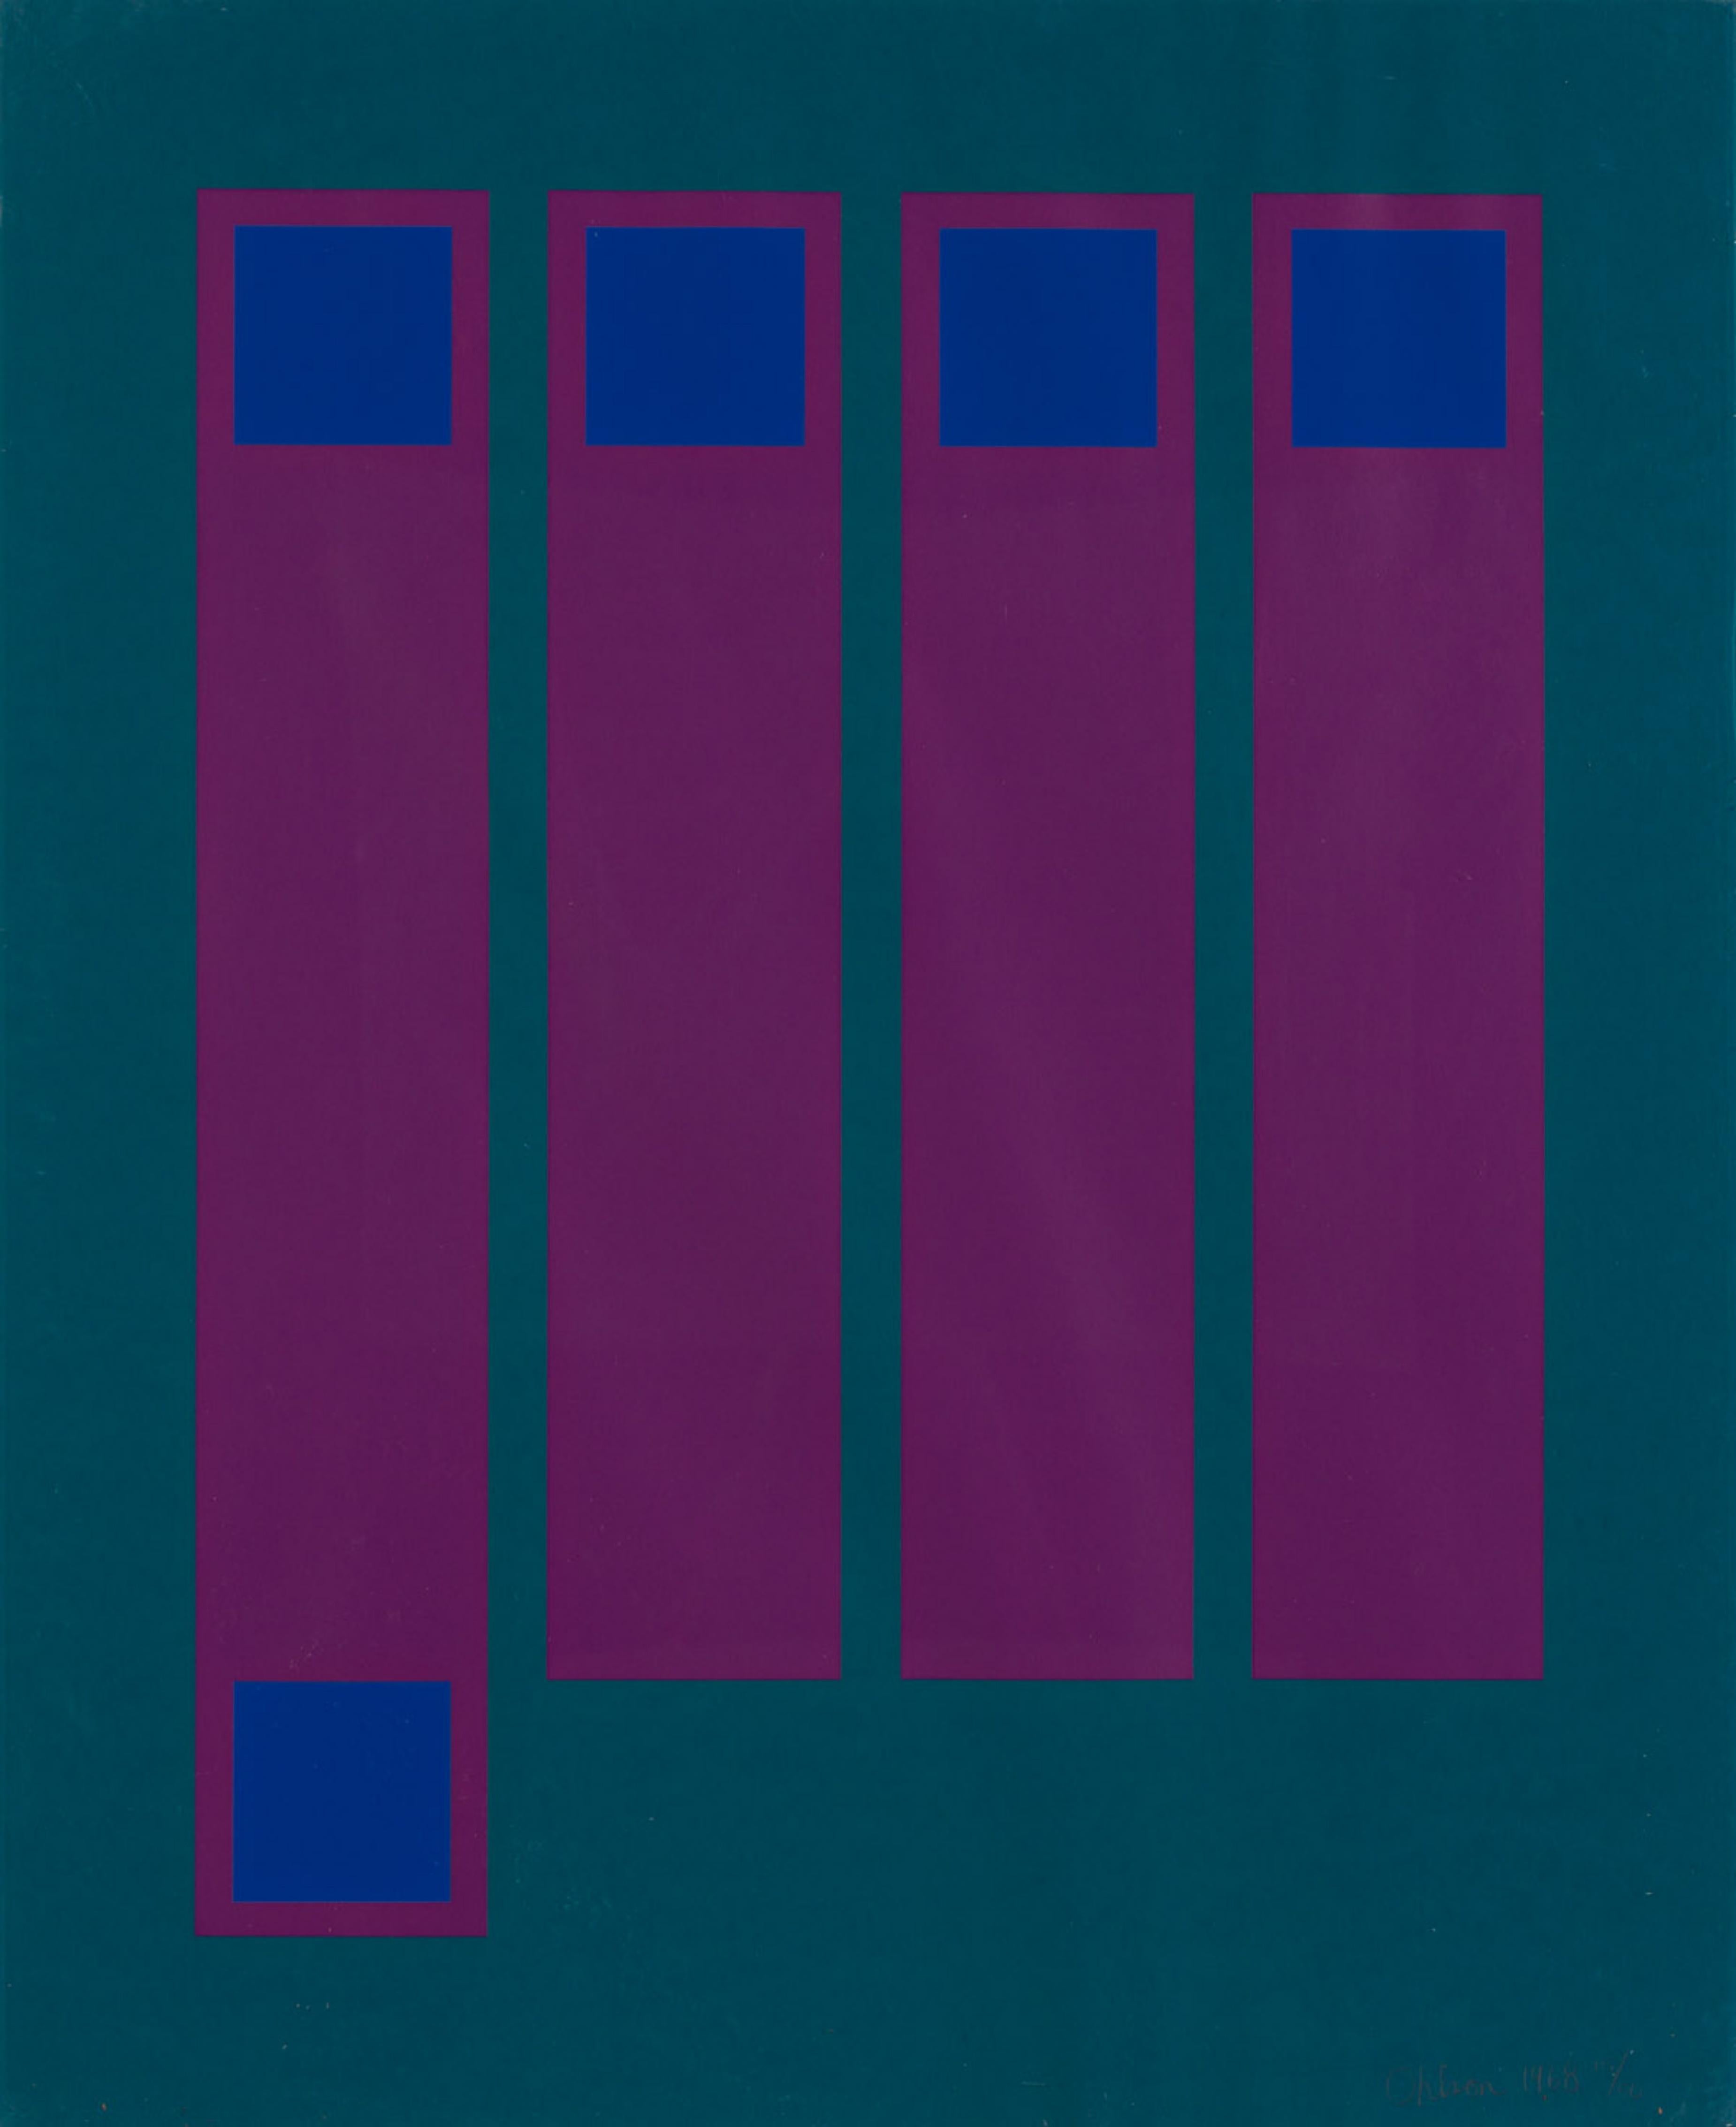 Abstract Print Doug Ohlson - Sans titre sérigraphie Op Art des années 1960 - Abstraction géométrique 